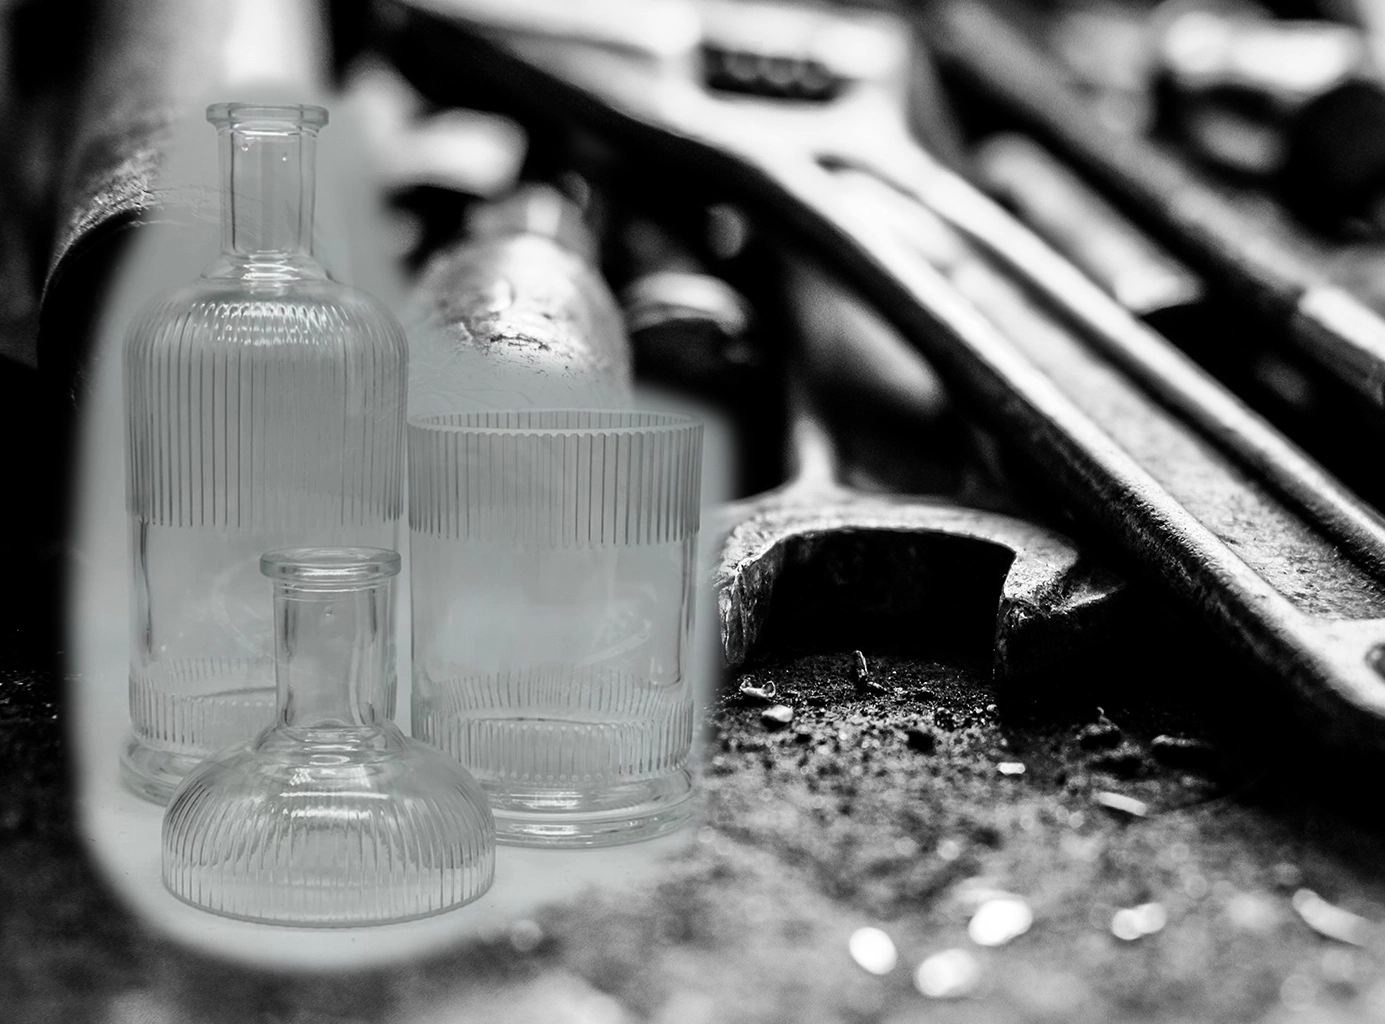 SeeFeuer Starnberg - alte Flaschen und Werkzeug zur Glasbearbeitung